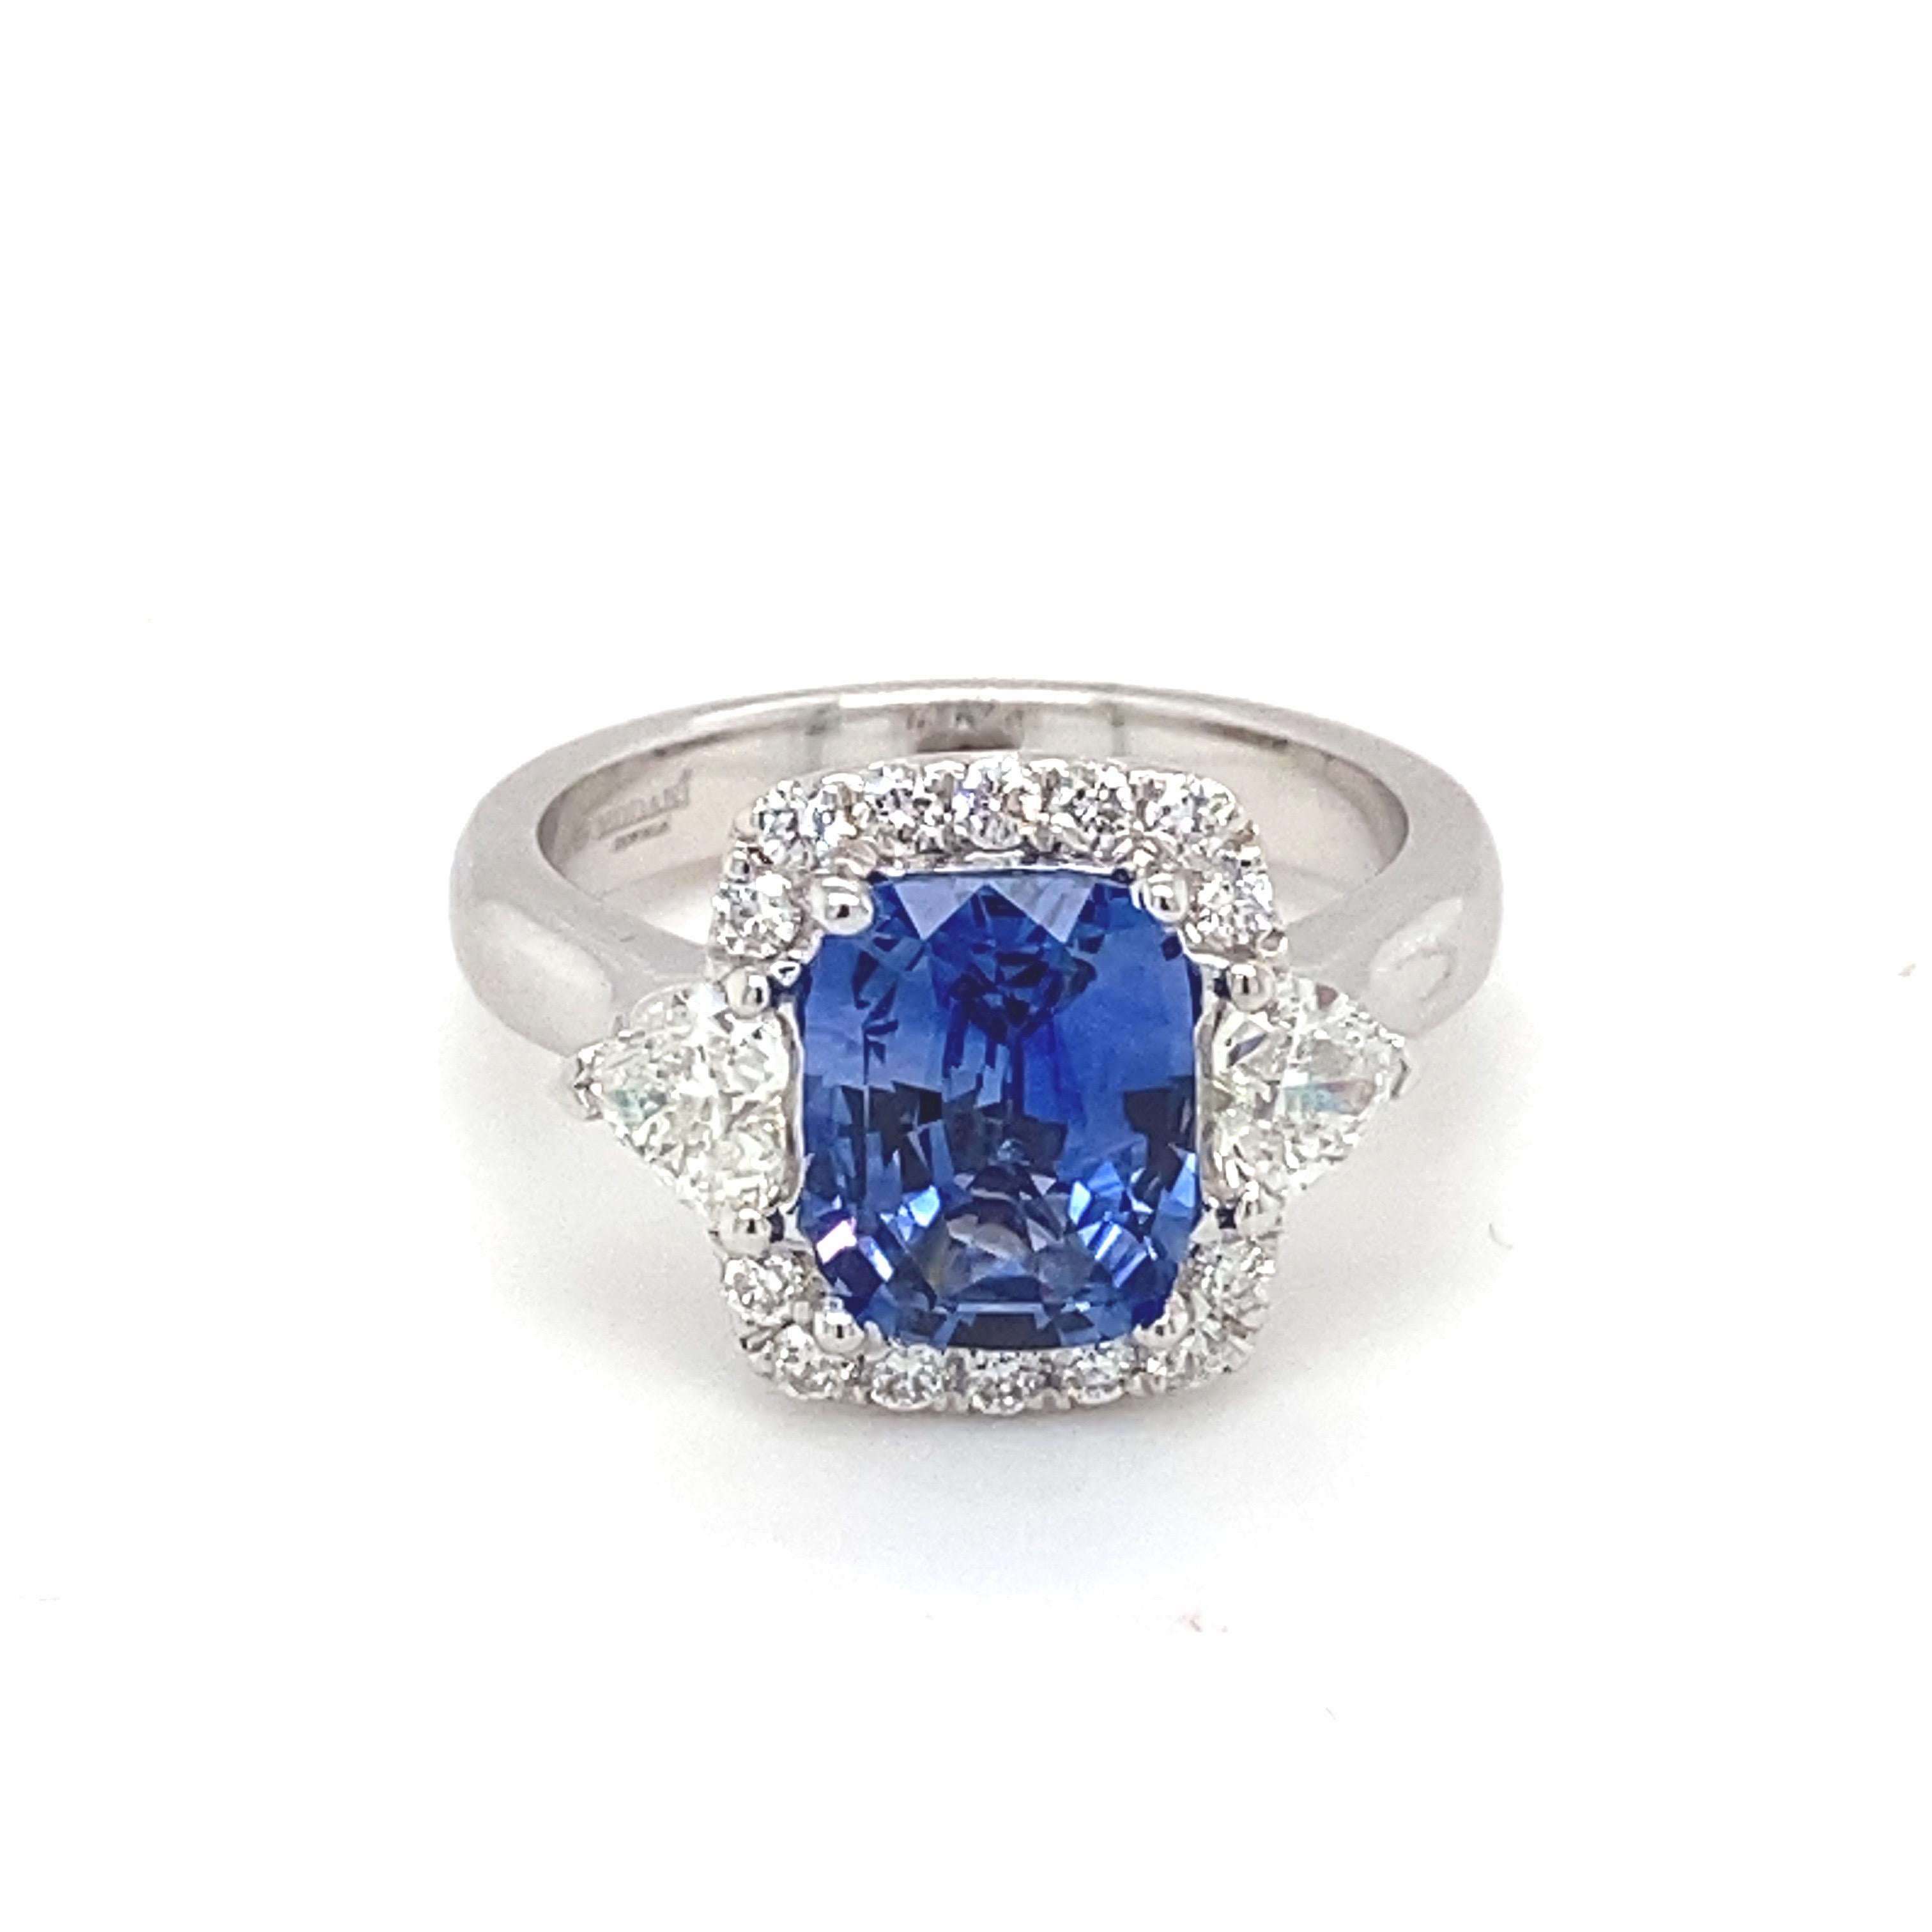 Dieser GIA-zertifizierte kissenförmige blaue Saphir von 2,76 Karat ist von einem glitzernden Halo aus weißen Diamanten umgeben. Es hat auch zwei Trillion Form weißen Diamanten als Seite Stein. Dieser äußerst elegante Ring aus Weißgold besticht durch